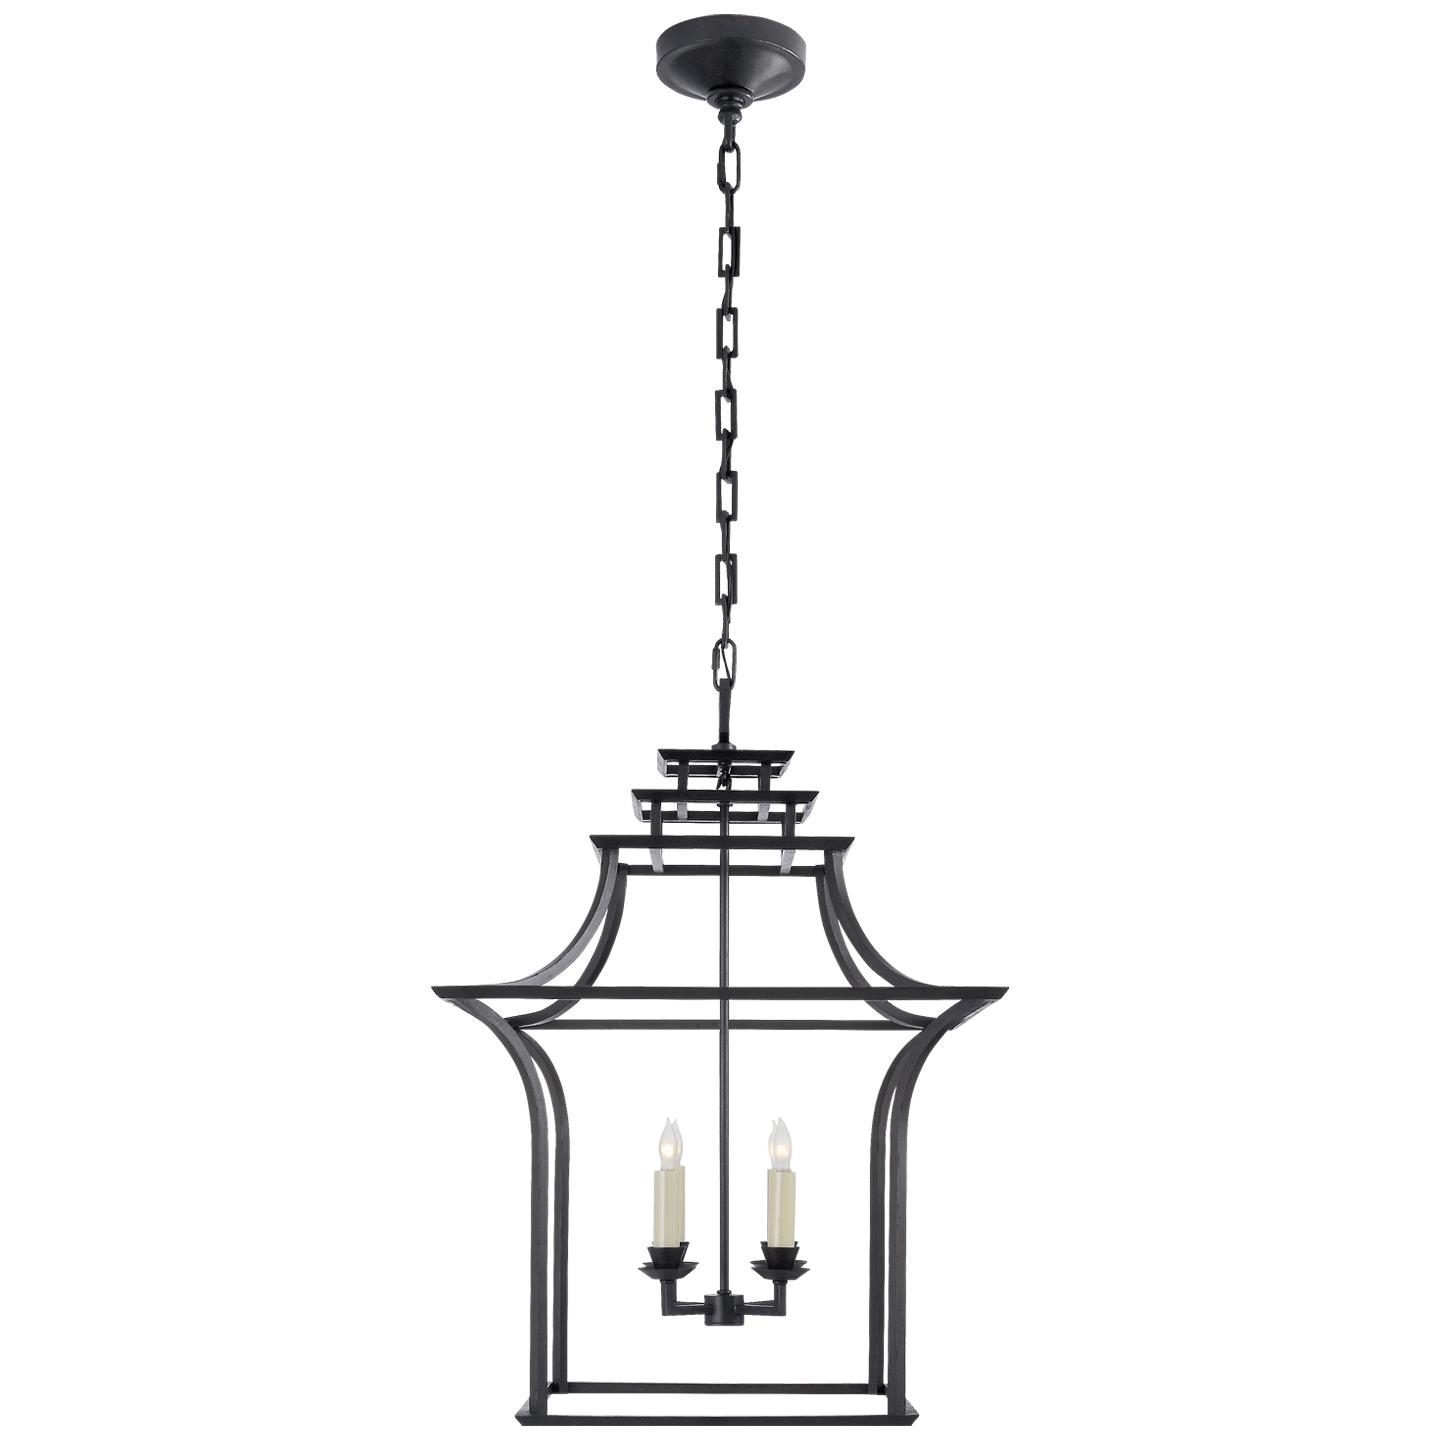 Купить Подвесной светильник Brighton Pagoda Lantern в интернет-магазине roooms.ru